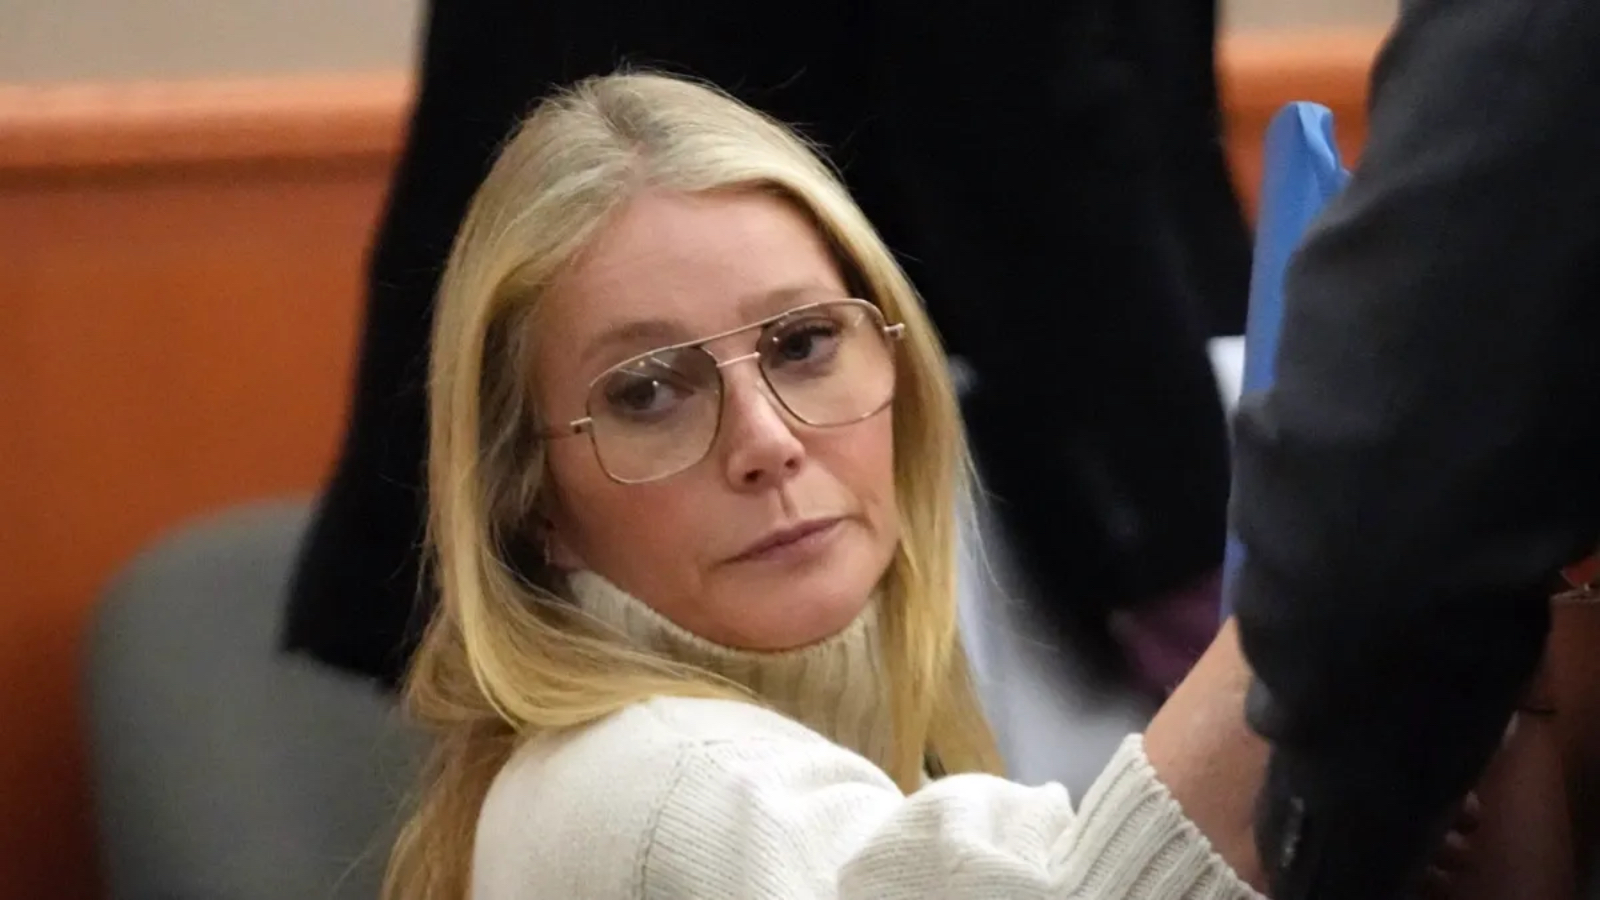 Gwyneth Paltrow derisa per il suo 'look da serial killer' durante il processo per l'incidente sciistico